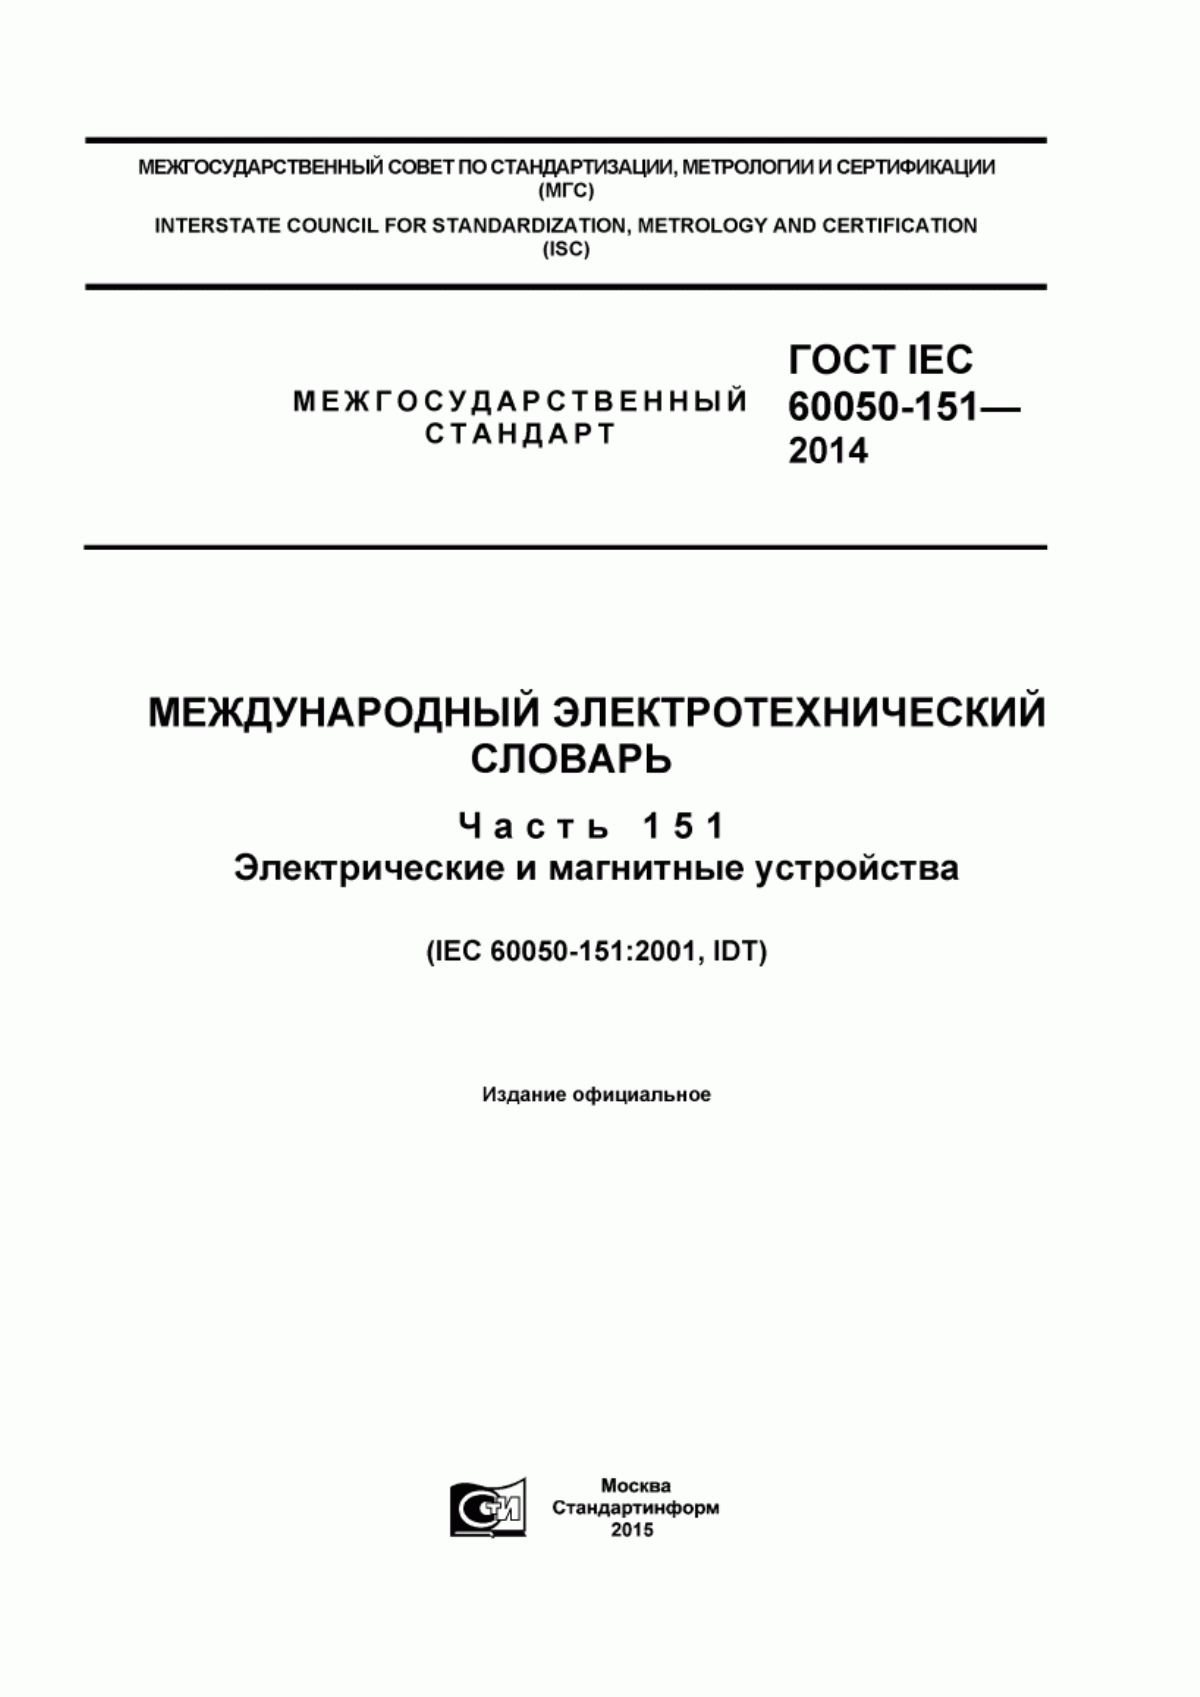 ГОСТ IEC 60050-151-2014 Международный электротехнический словарь. Часть 151. Электрические и магнитные устройства